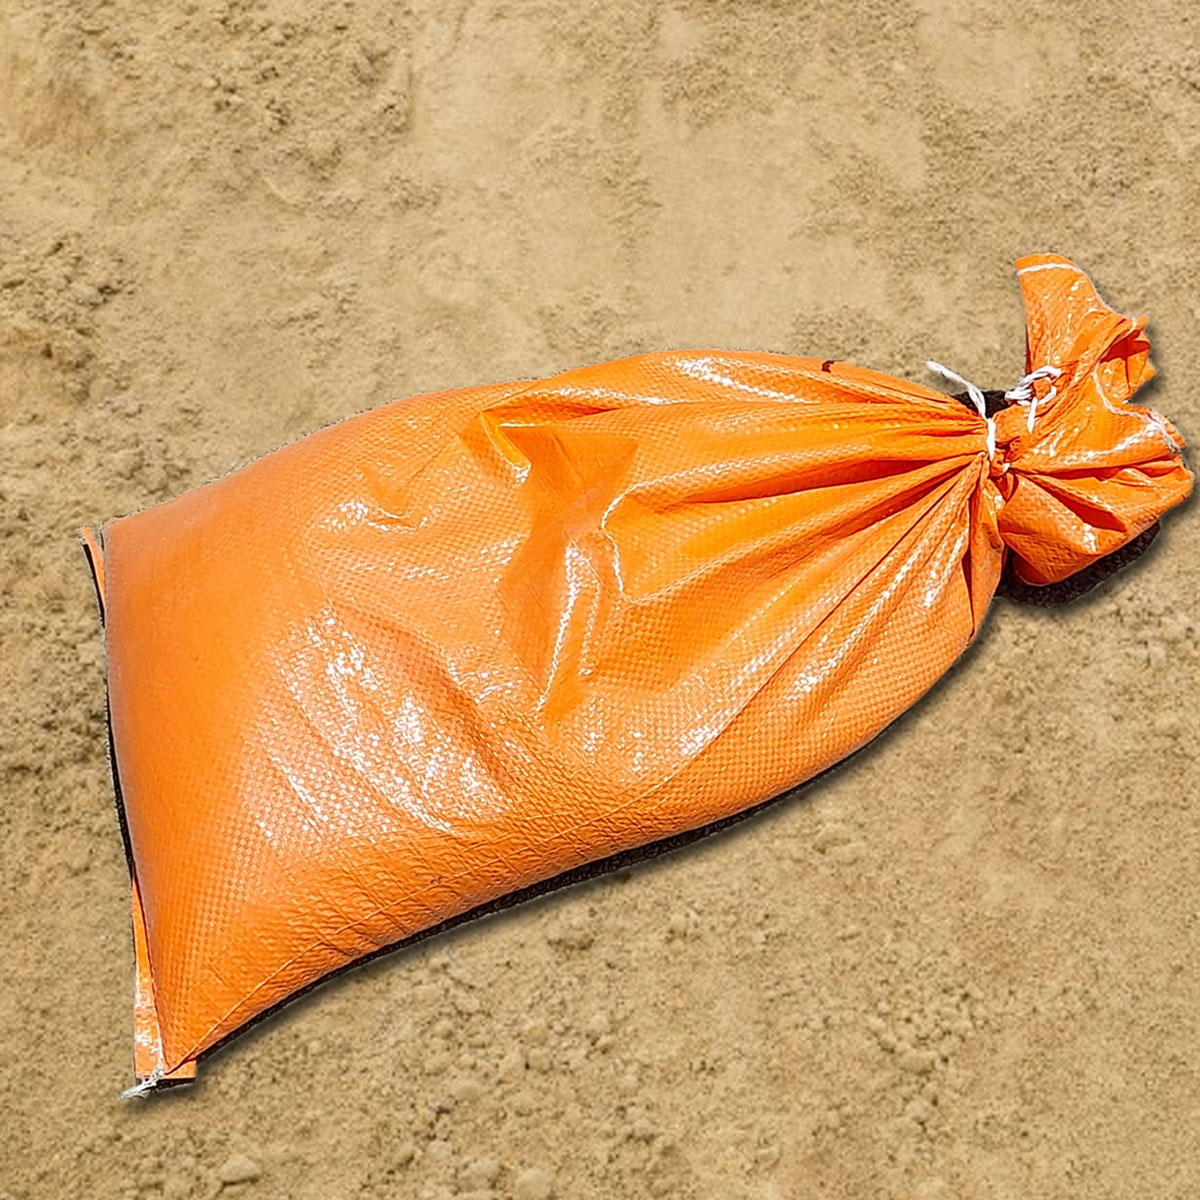 15kg sandbags in orange hi-vis bags